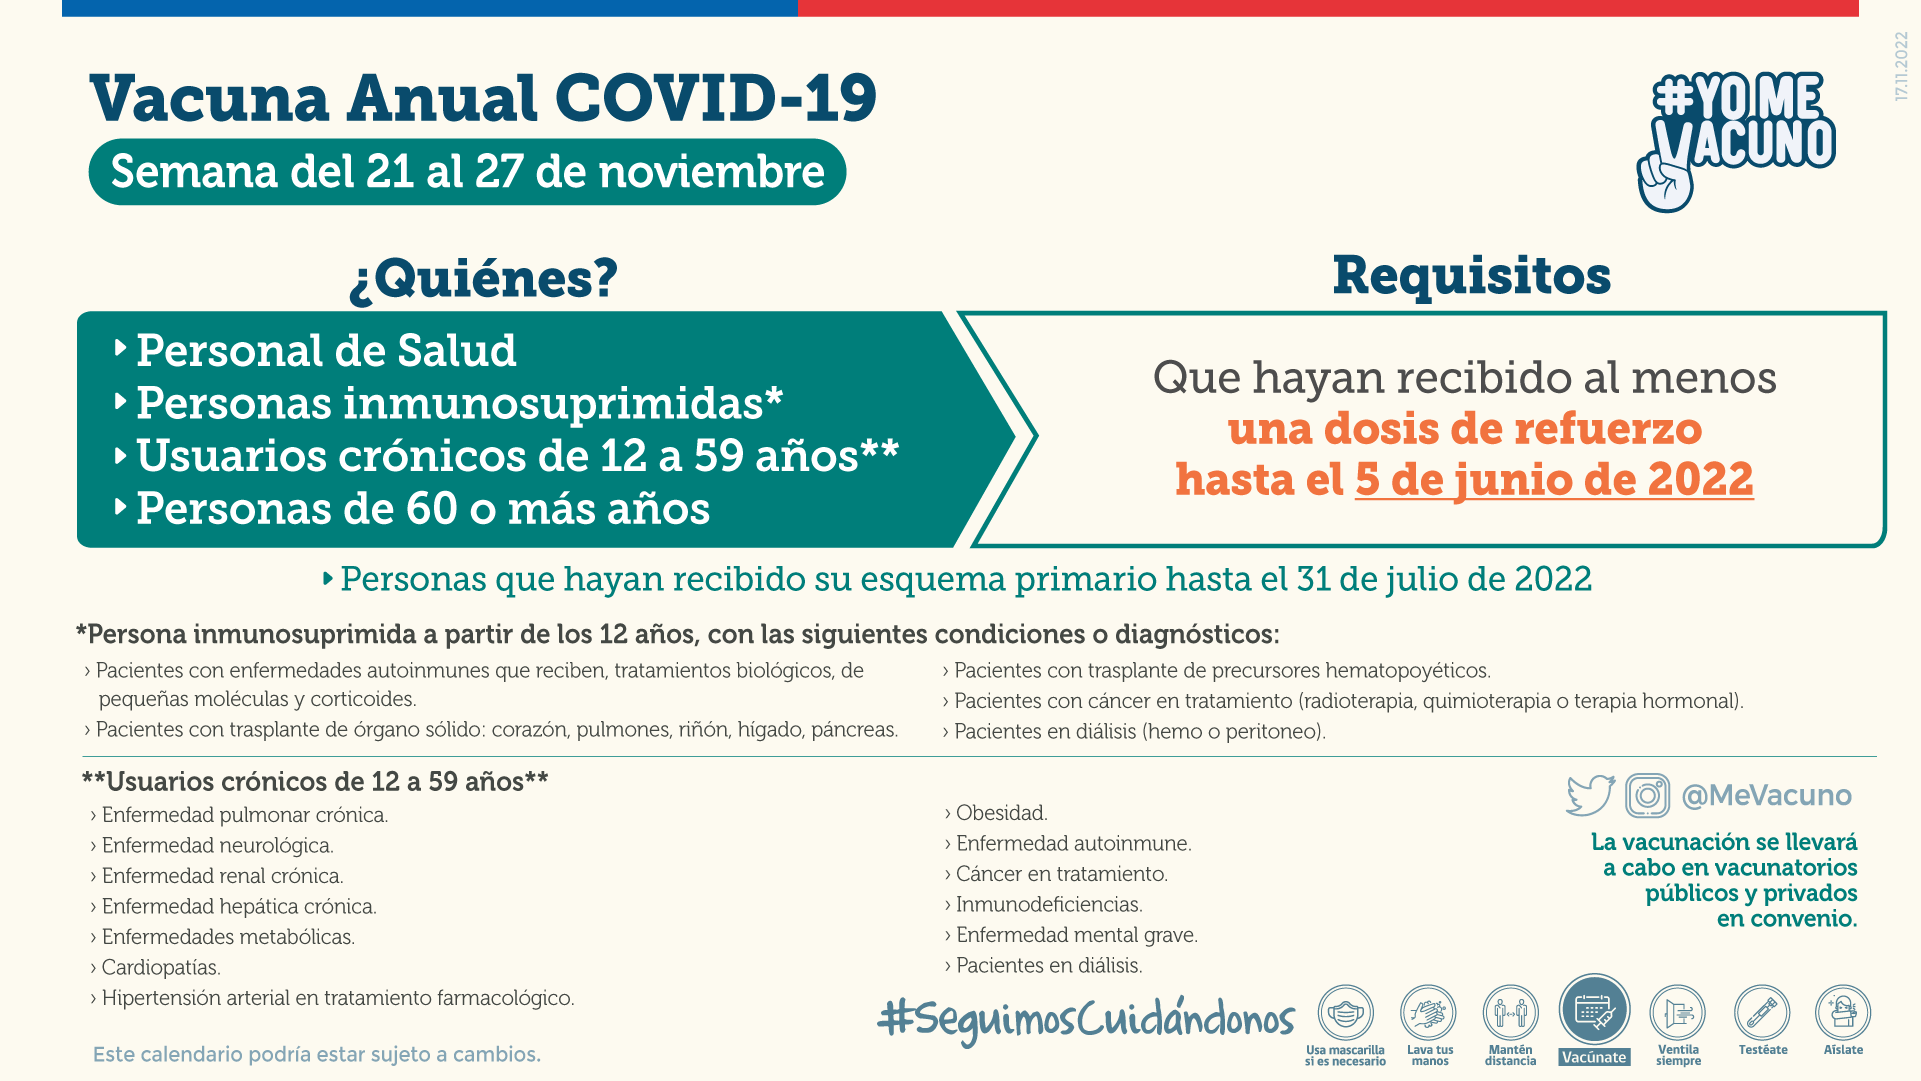 Vacuna anual COVID-19 para personal de salud, personas inmunosuprimidas, usuarios crónicos de 12 a 59 años y personas de 60 años o más que hayan recibido al menos una dosis de refuerzo hasta el 5 de junio 2022